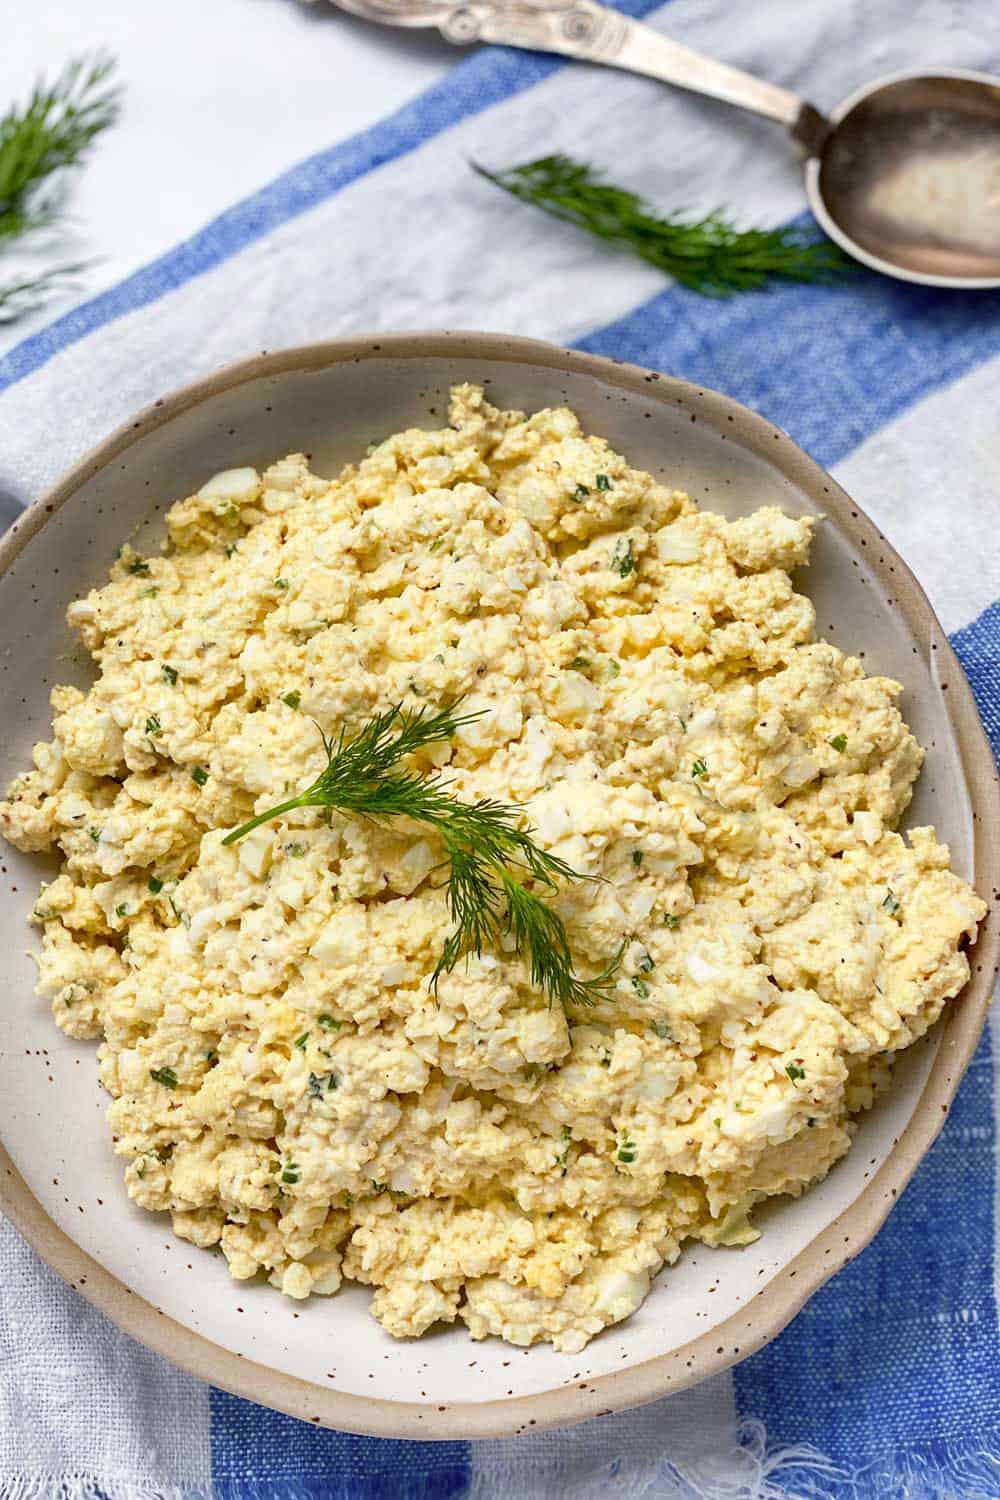 https://www.panningtheglobe.com/wp-content/uploads/2020/04/best-egg-salad-recipe-7.jpg